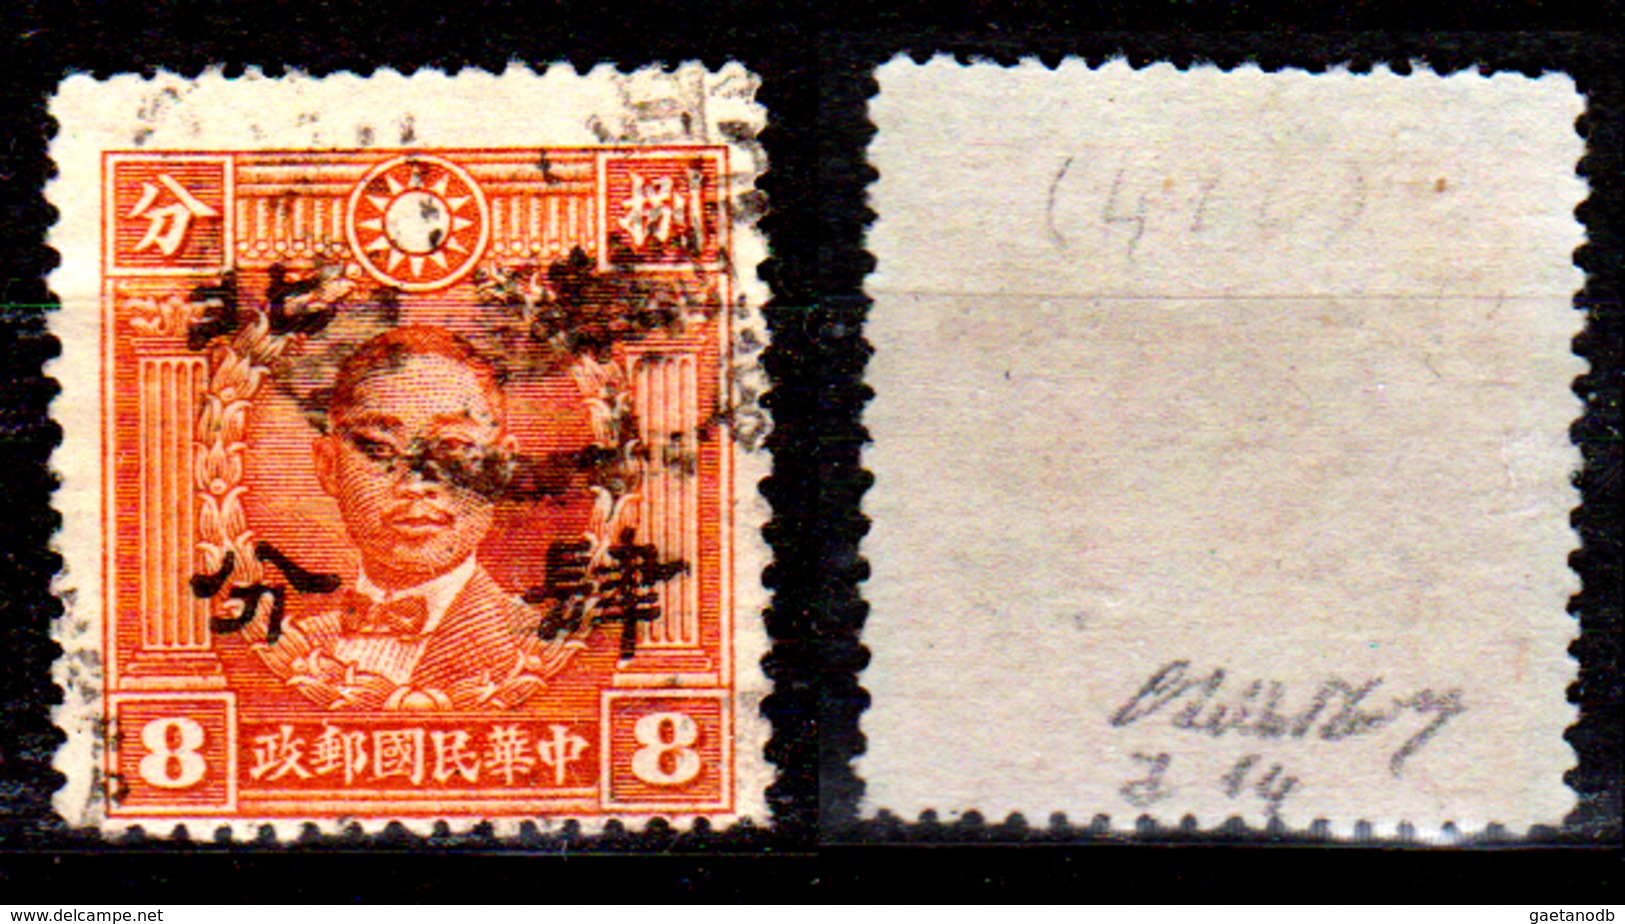 Cina-F-578 - Soprastampa "Hwa Pei" (Cina Del Nord) 1942 - Michel N. 292 - Senza Difetti Occulti. - 1941-45 Cina Del Nord